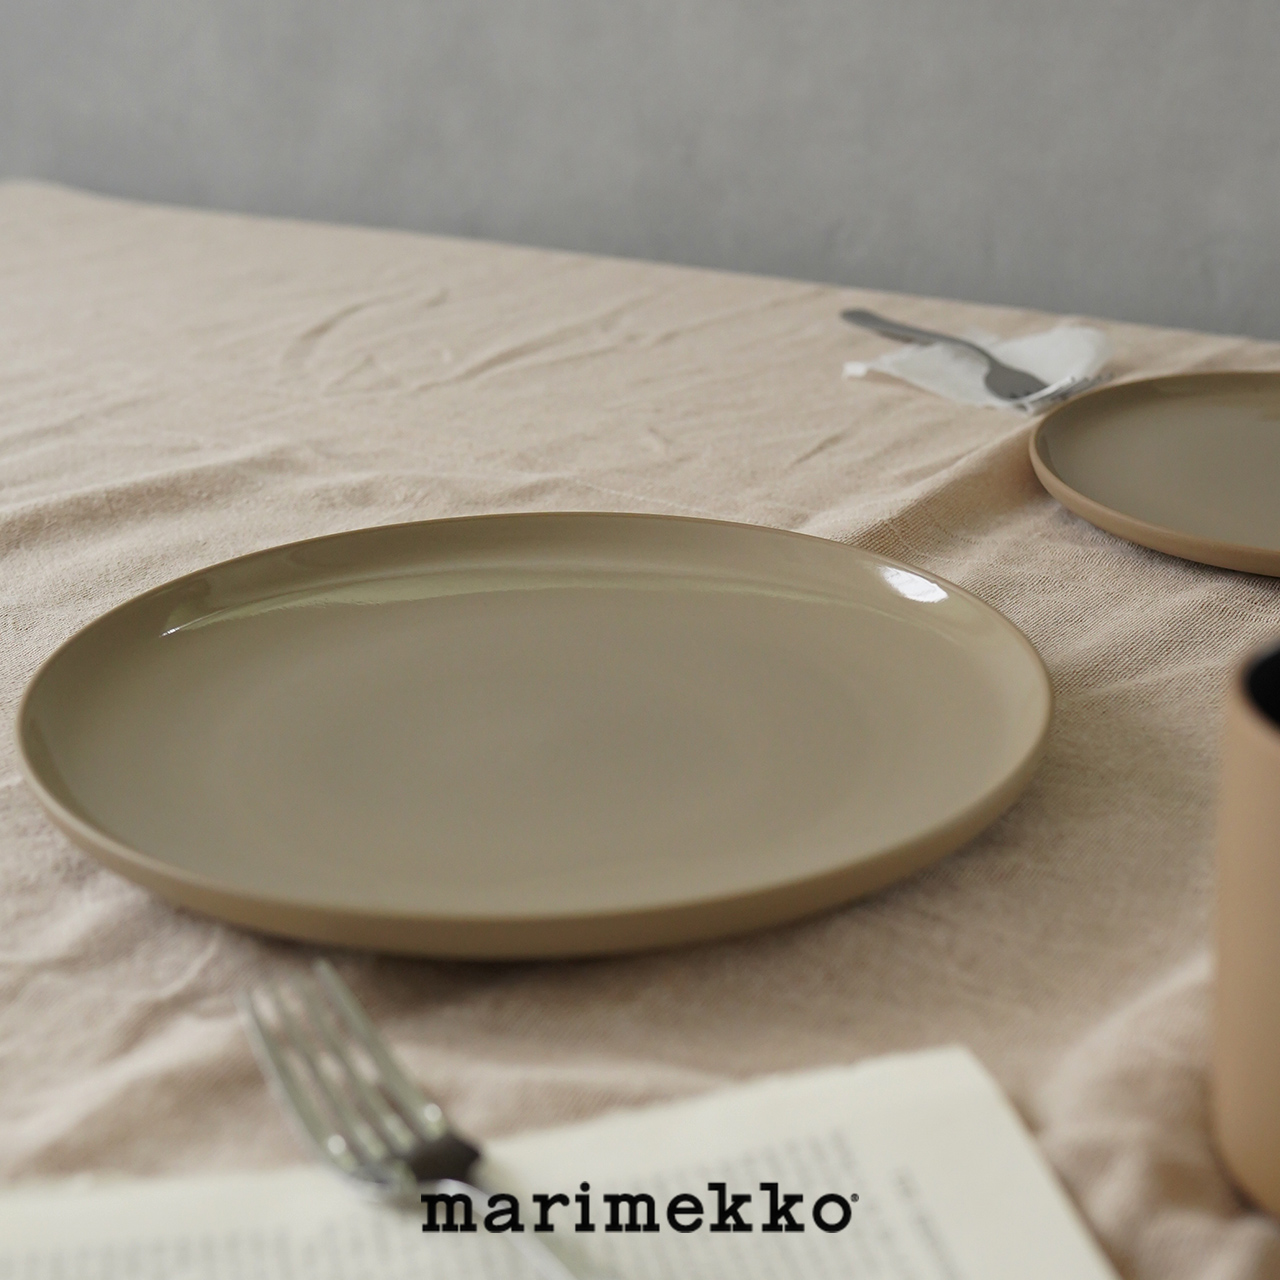 マリメッコ marimekko 完売 100年先まで愛せるテーブルウェア 懐かしくも洗練されたプレート